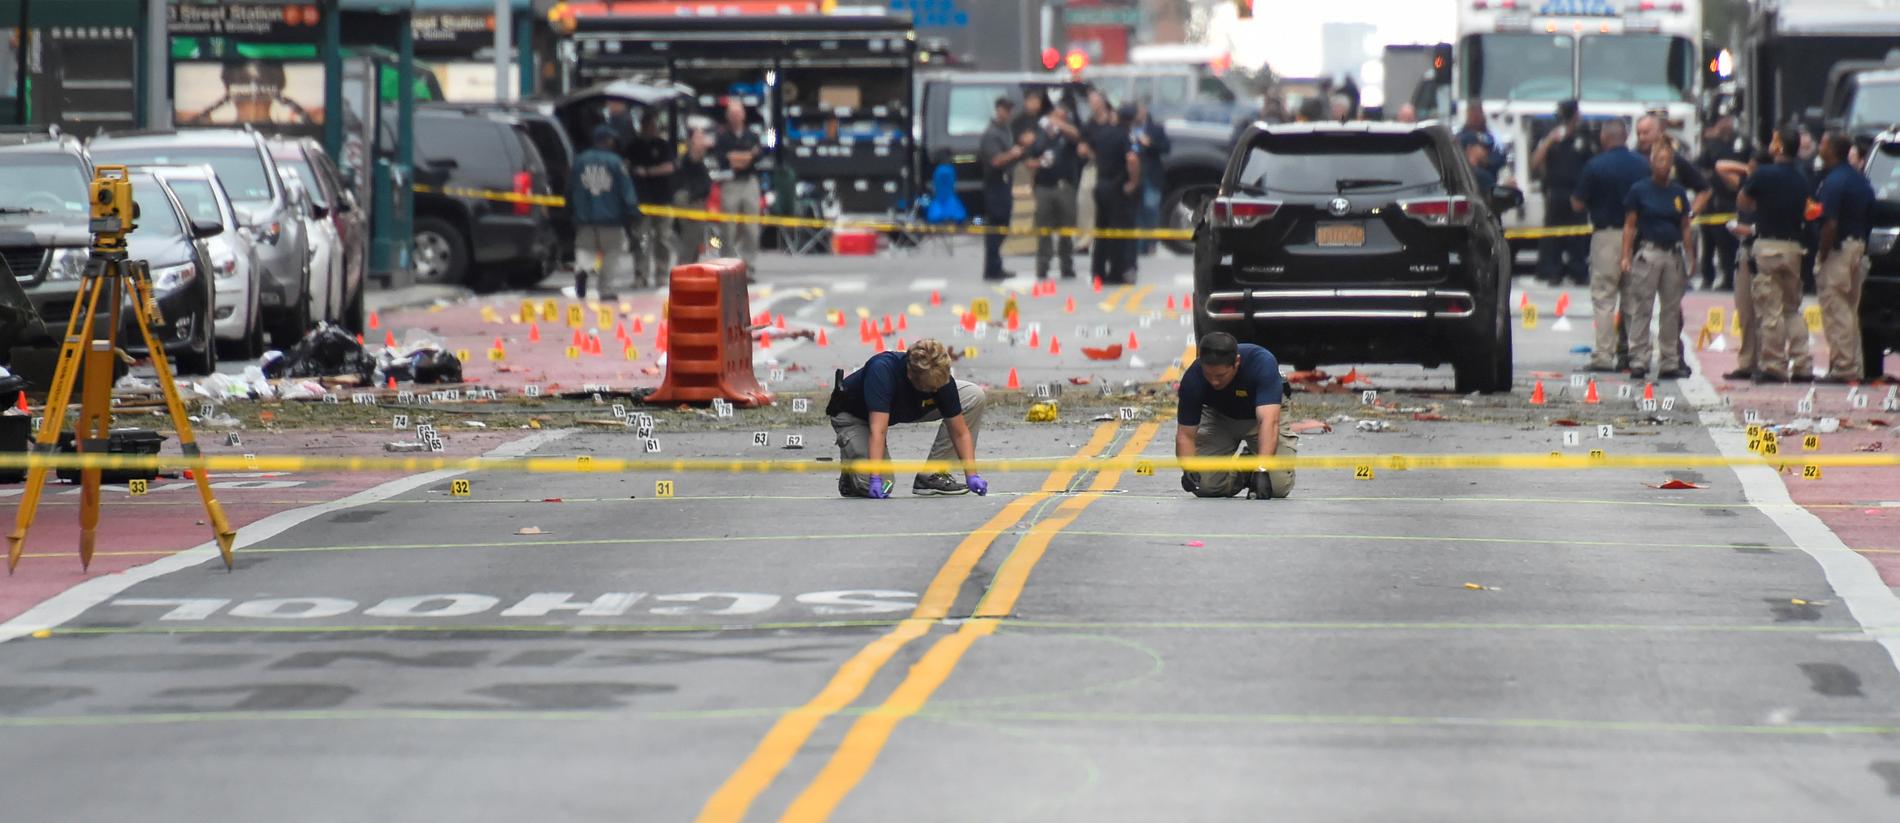 29 personer skadades när en sprängladdning detonerade i New York på söndagen.